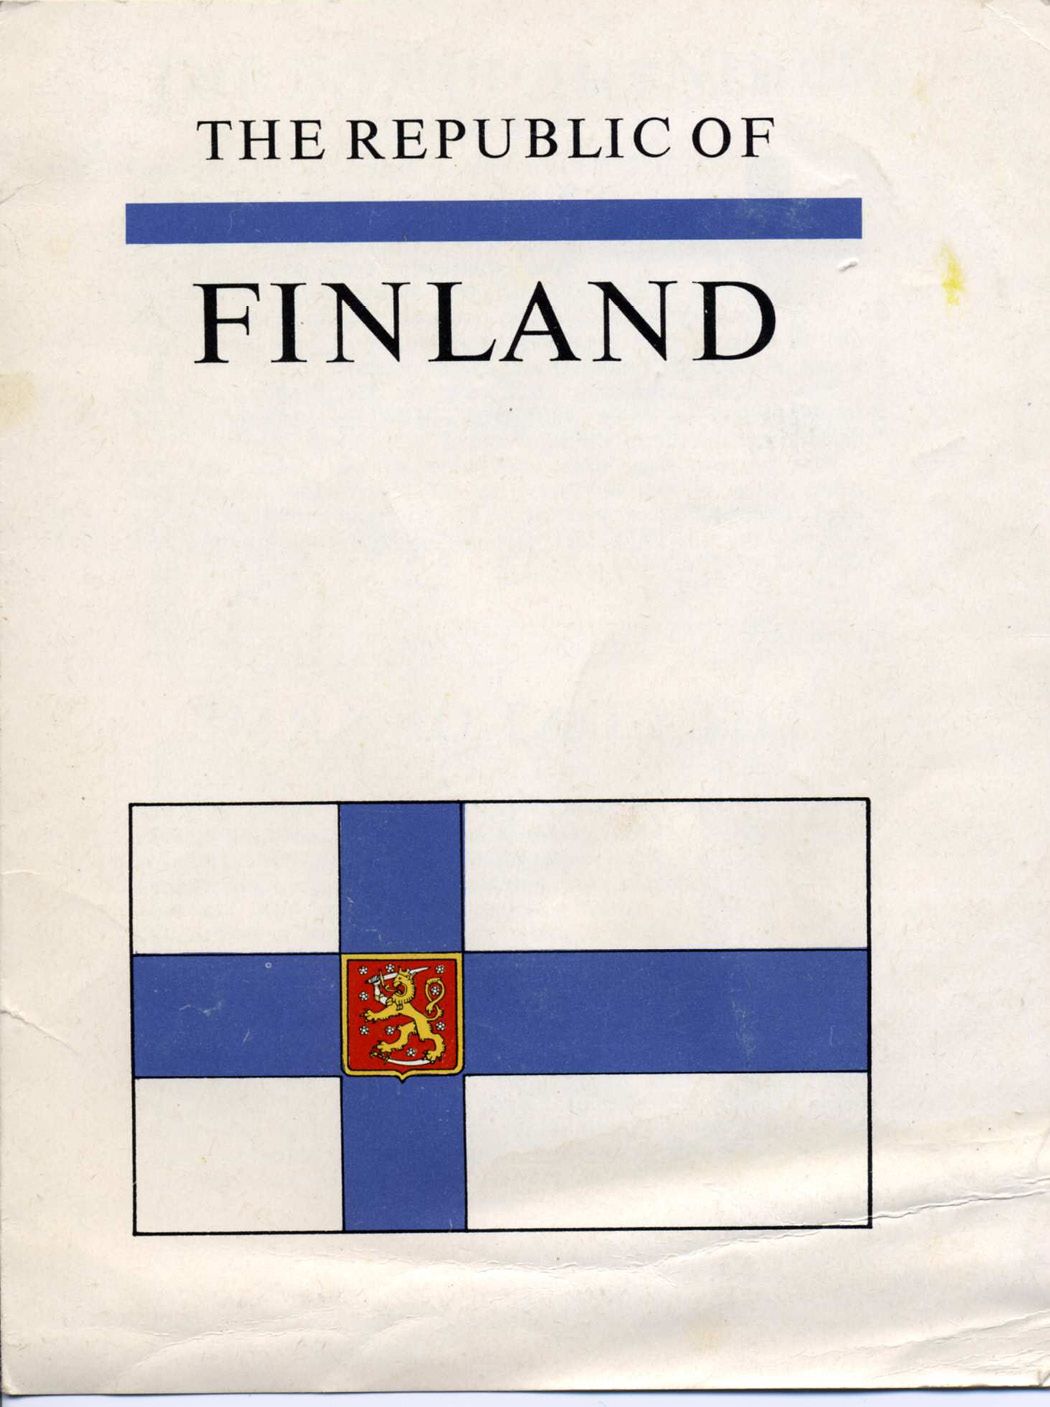 114-Finland%20flag%20flyer.tif